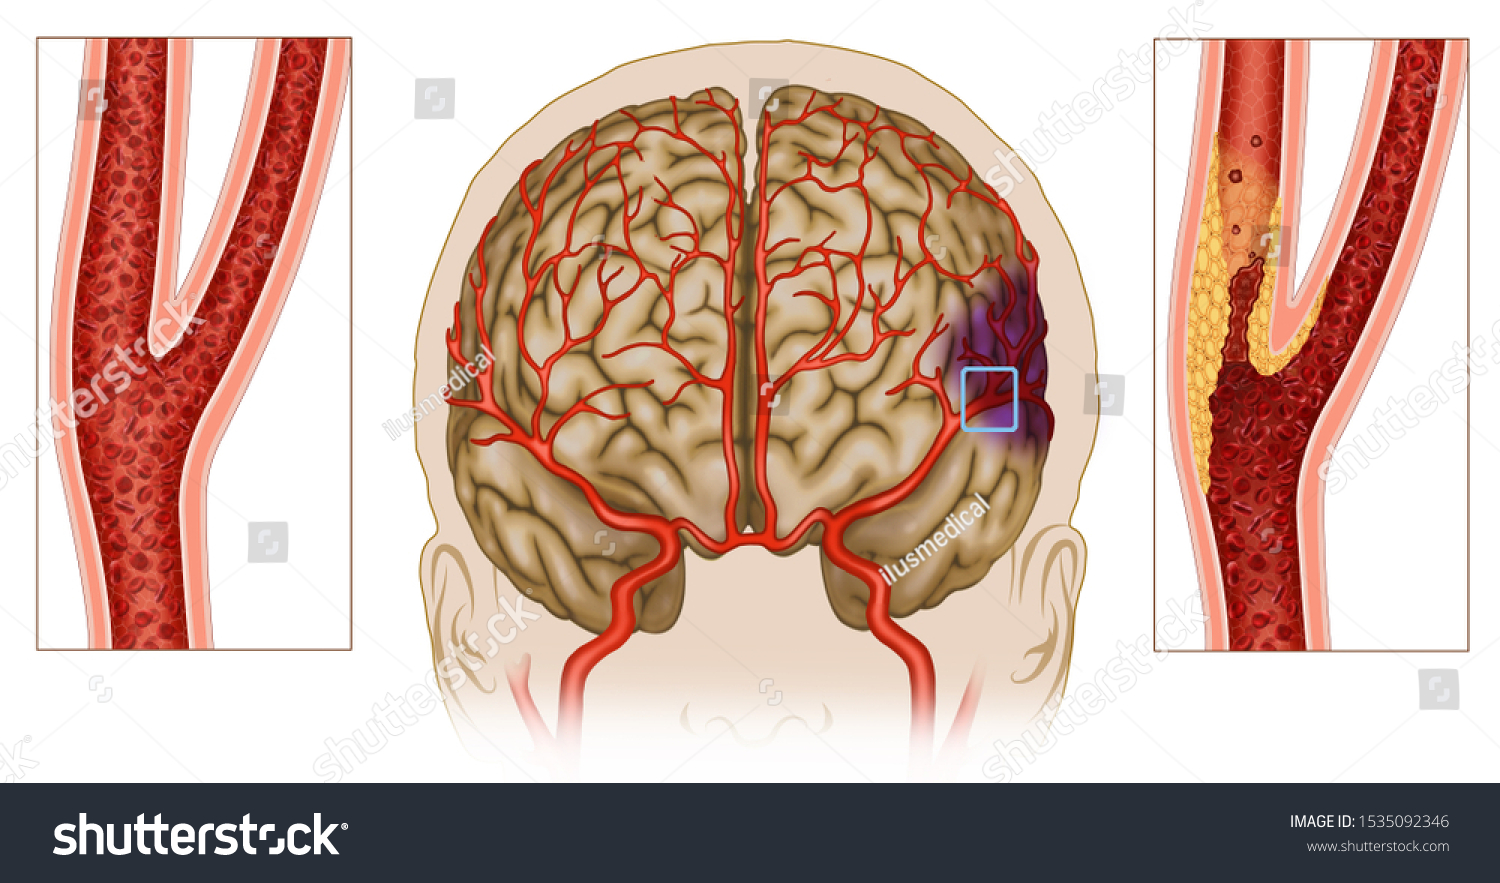 Причины сужения сосудов головного. Ангиодистония церебральных сосудов. Ангиодистония артерий головного мозга. Стеноз артерий головного мозга. Ангиодистония позвоночных артерий.